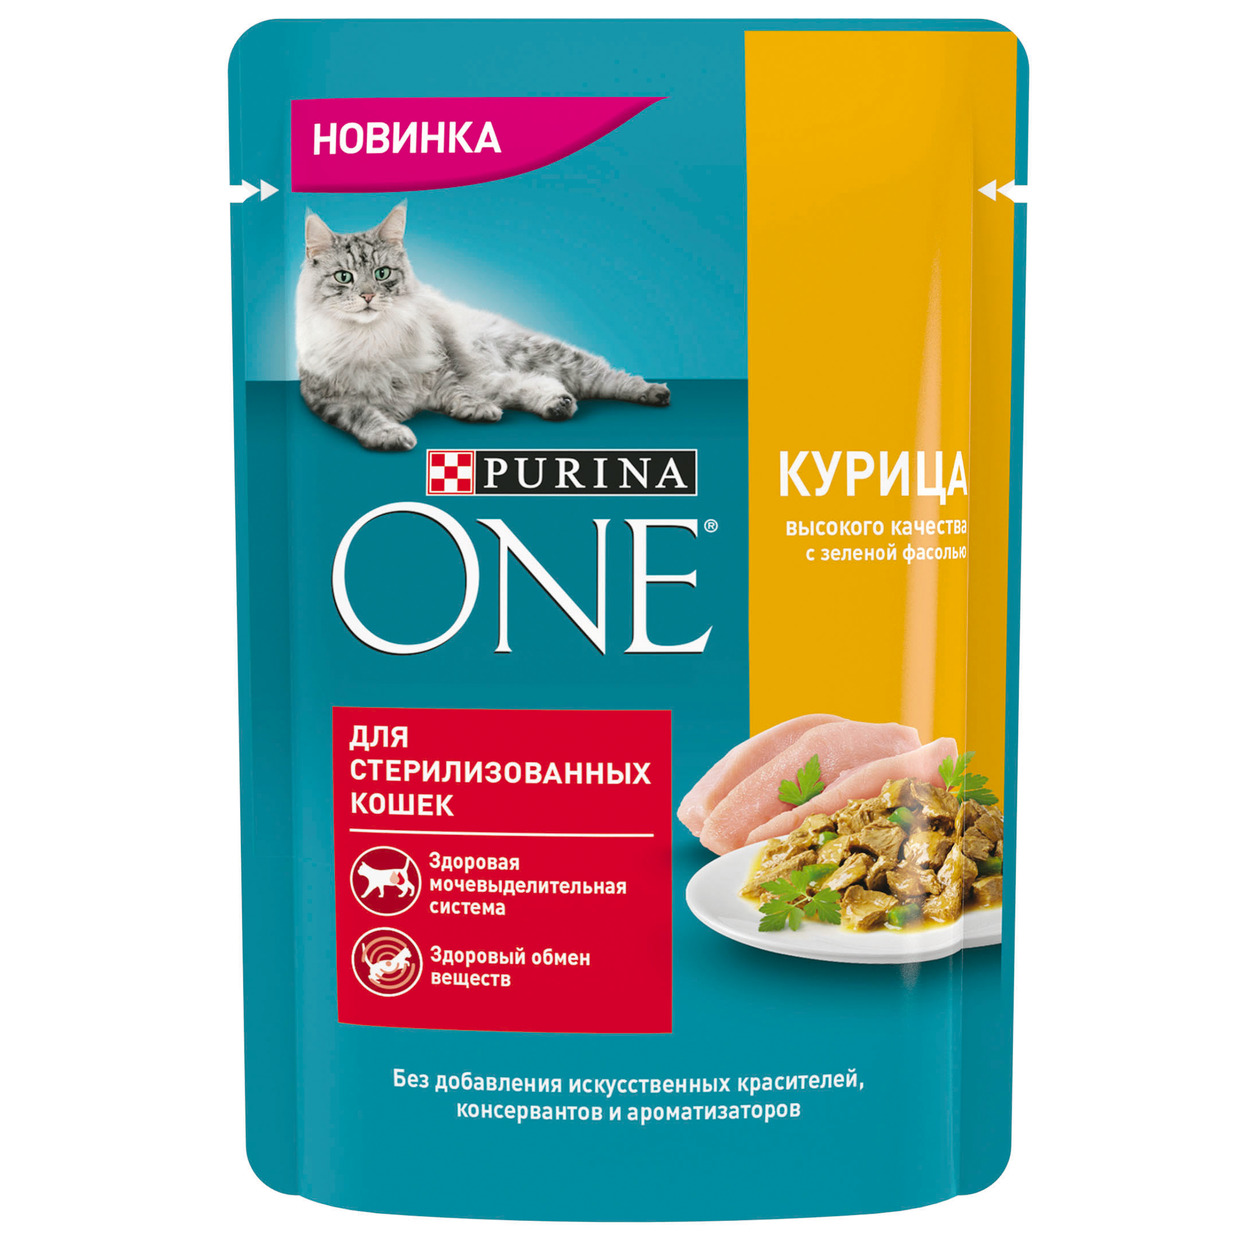 PURINA ONE® (ПУРИНА УАН) Корм консервиров. полнорац. для стерилизованных кошек, с курицей высокого качества и зеленой фасолью, 75 гр